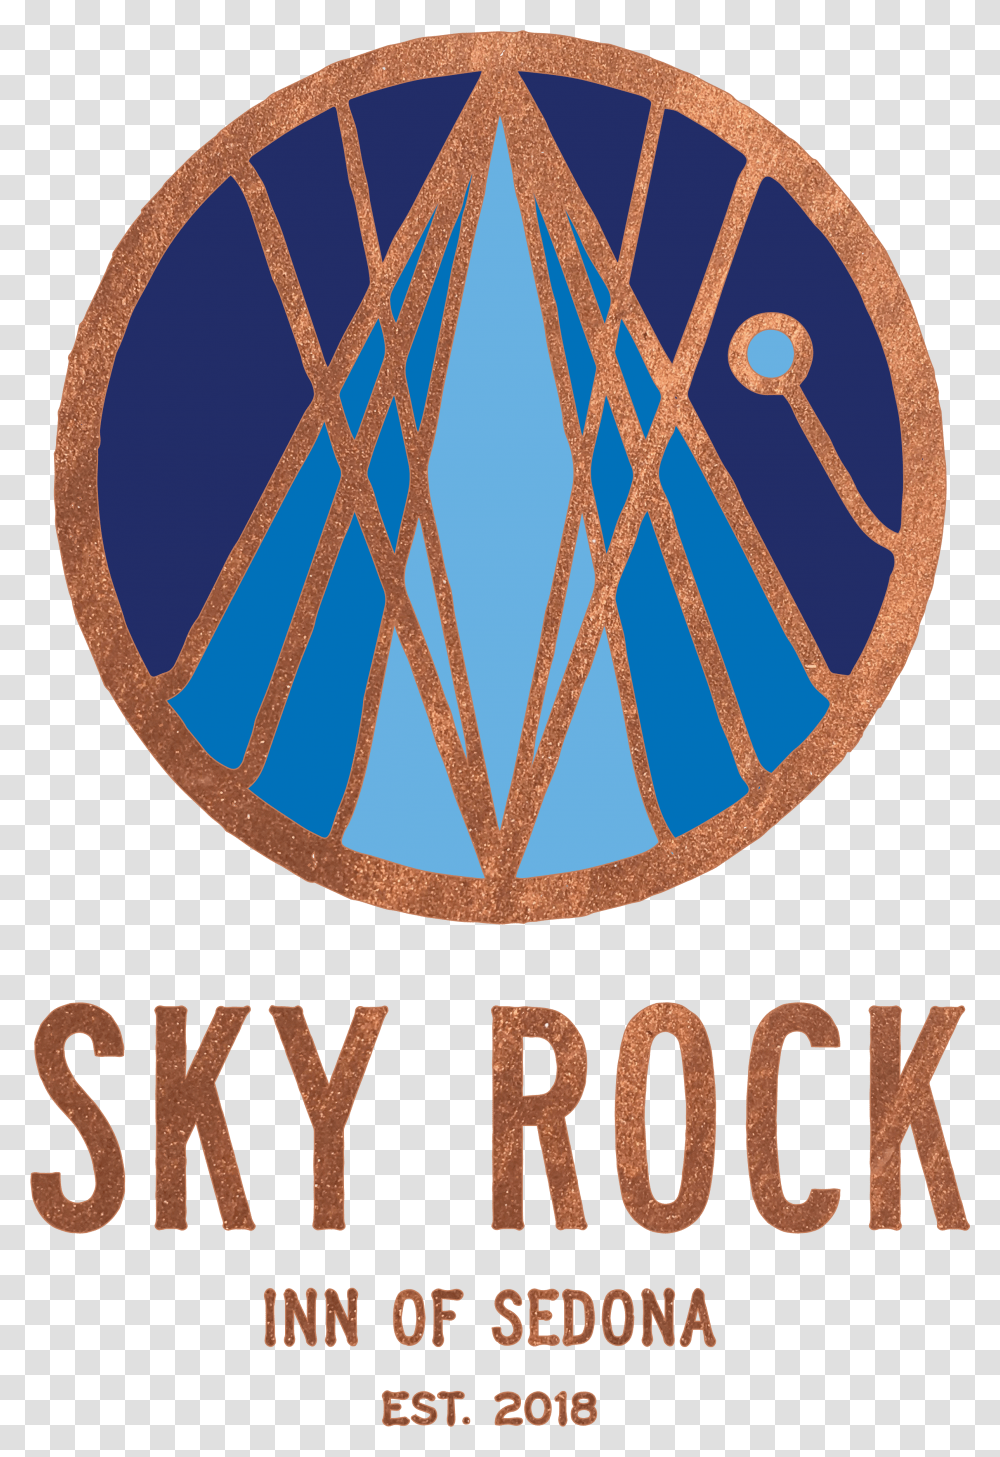 Sky Rock Inn Of Sedona Transparent Png